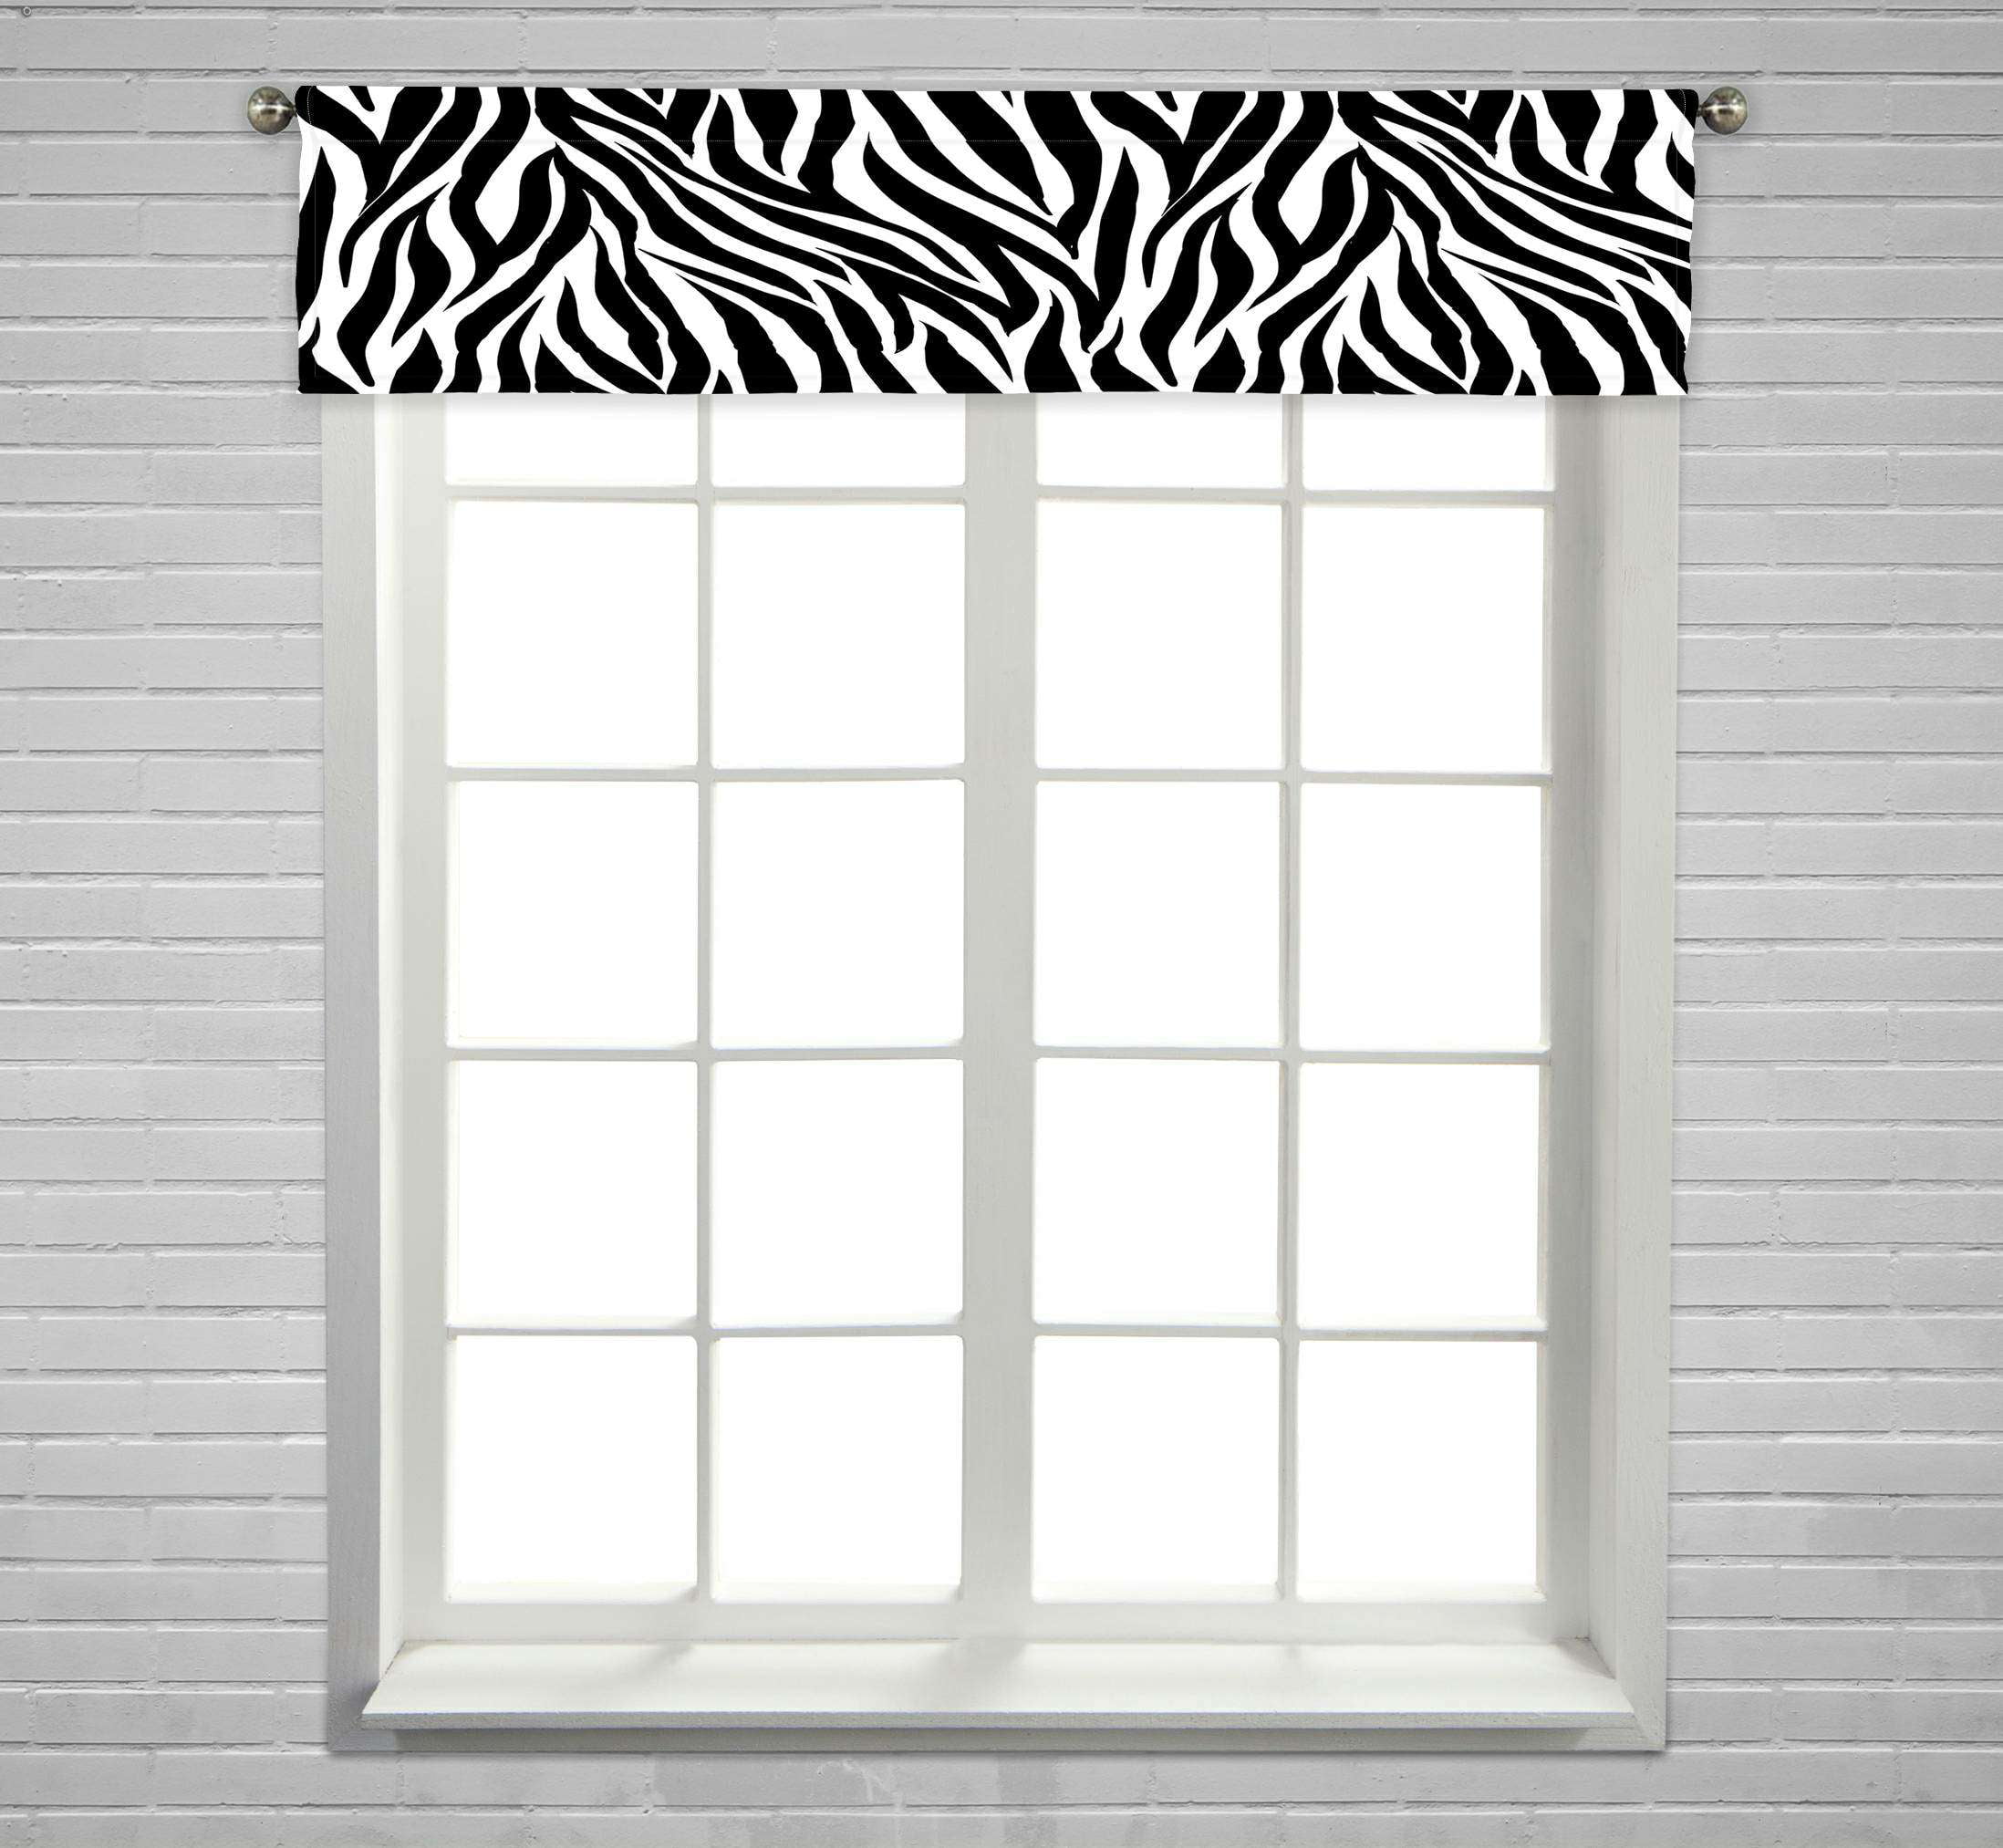 ECZJNT Animal Zebra Zebra Stripe Window Curtain Valance Rod Pocket Size ...